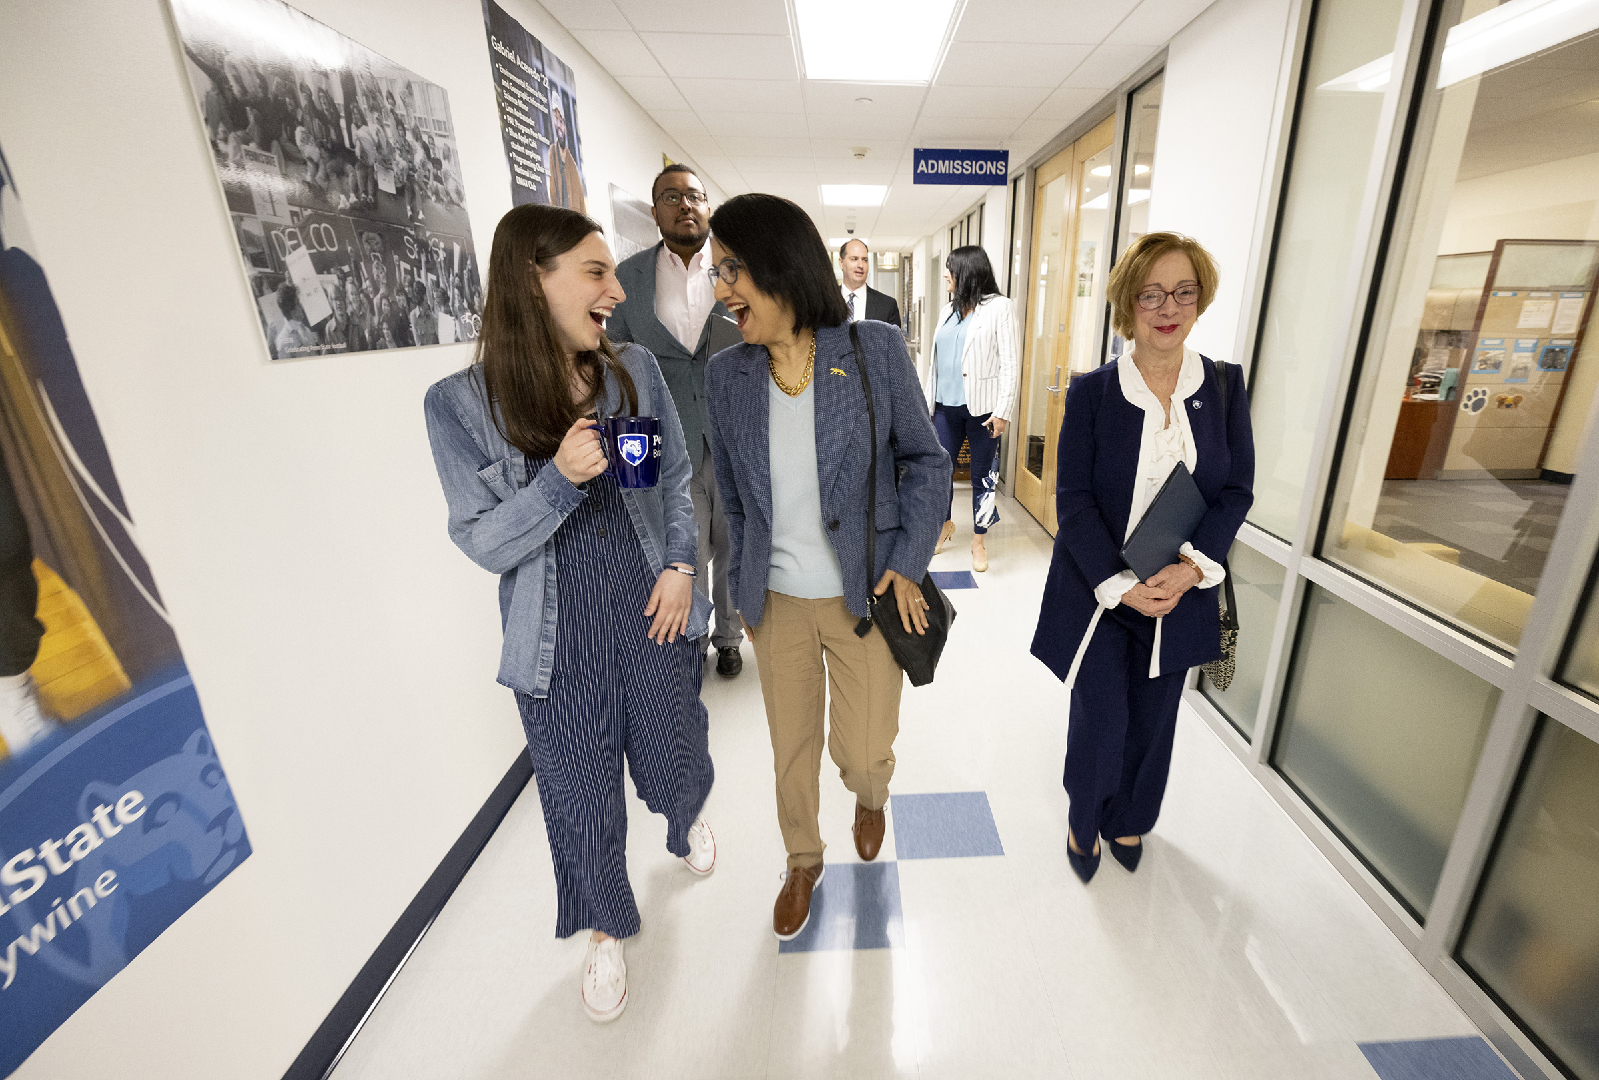 Three women walk down a hallway.